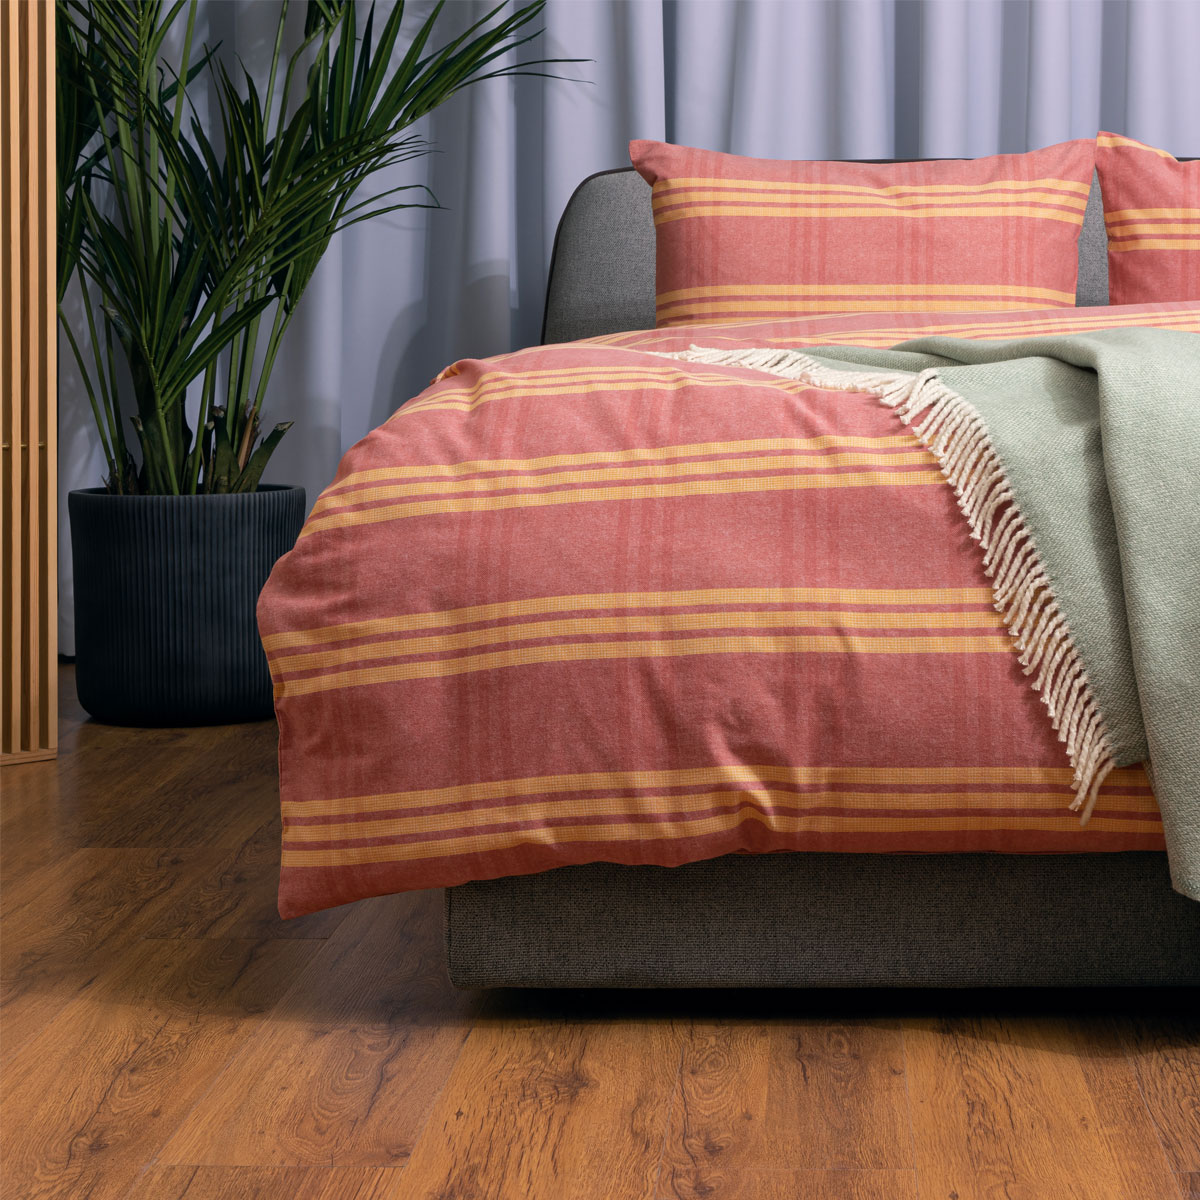 Комплект постельного белья семейный Pappel red-yellow stripe Pappel SYXUR355AMT/150200F, цвет розовый